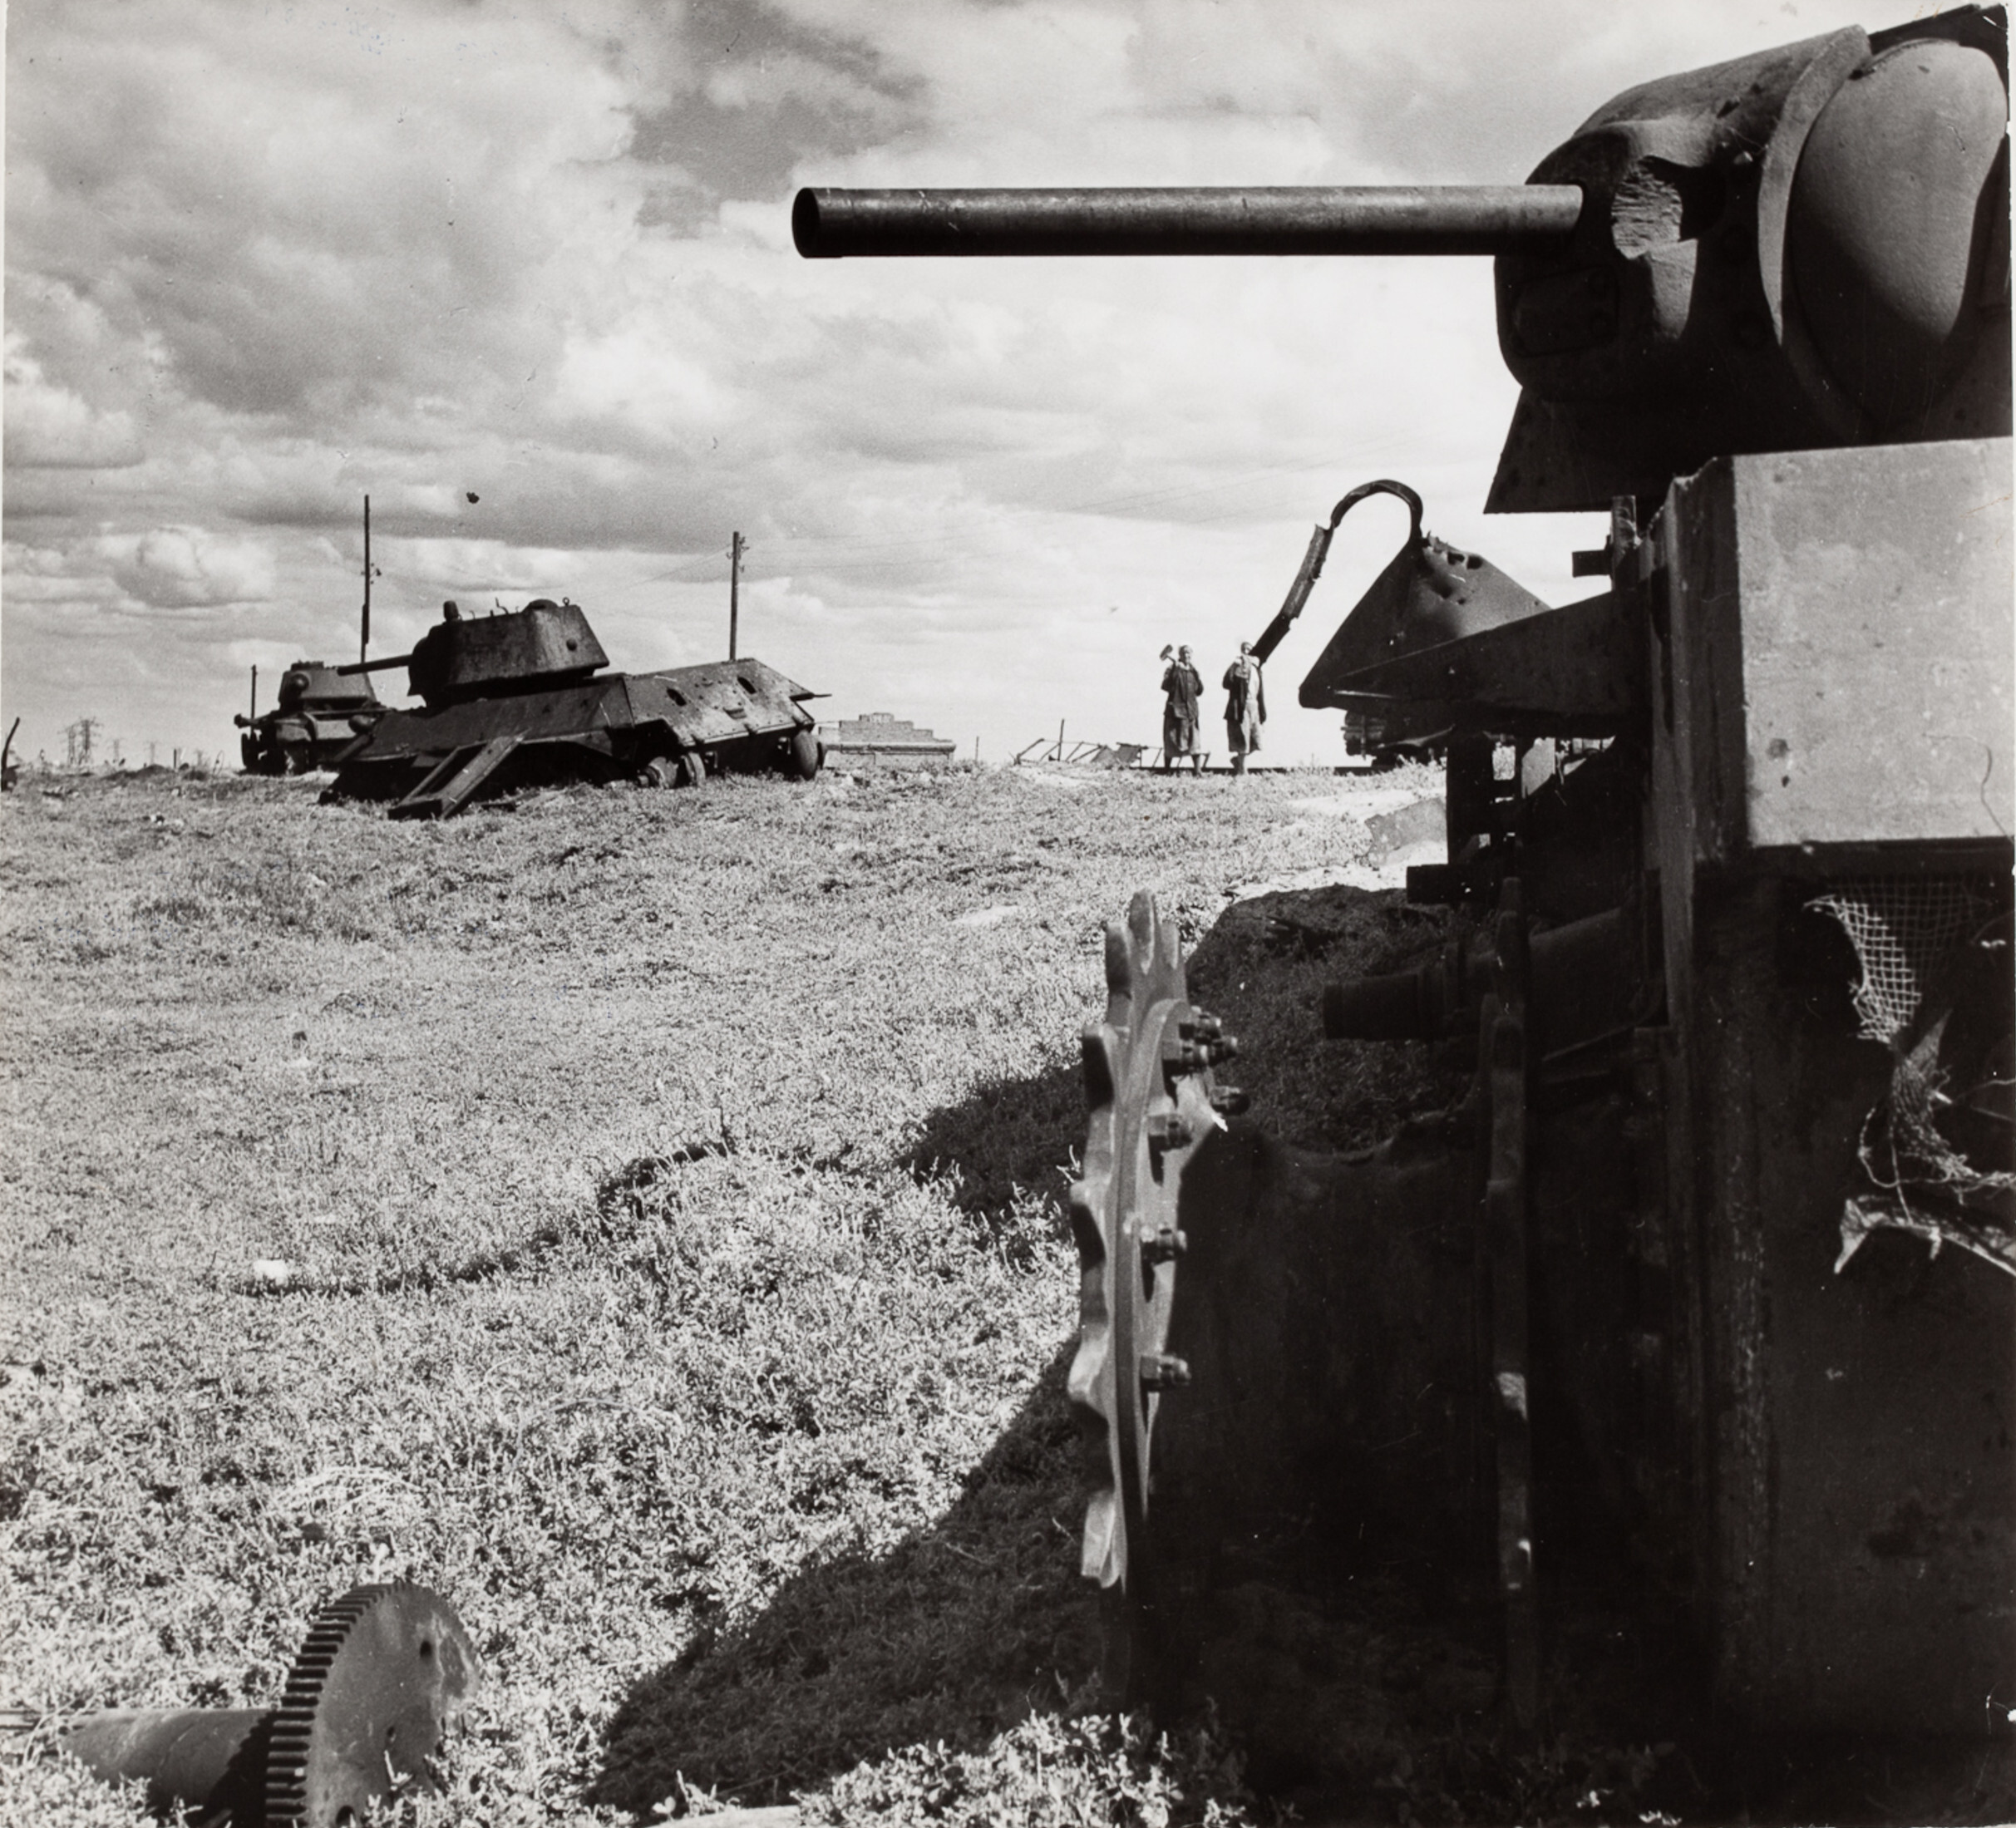 Обломки военной техники в окрестностях города, Сталинград, СССР, 1947 год. Фотограф Роберт Капа